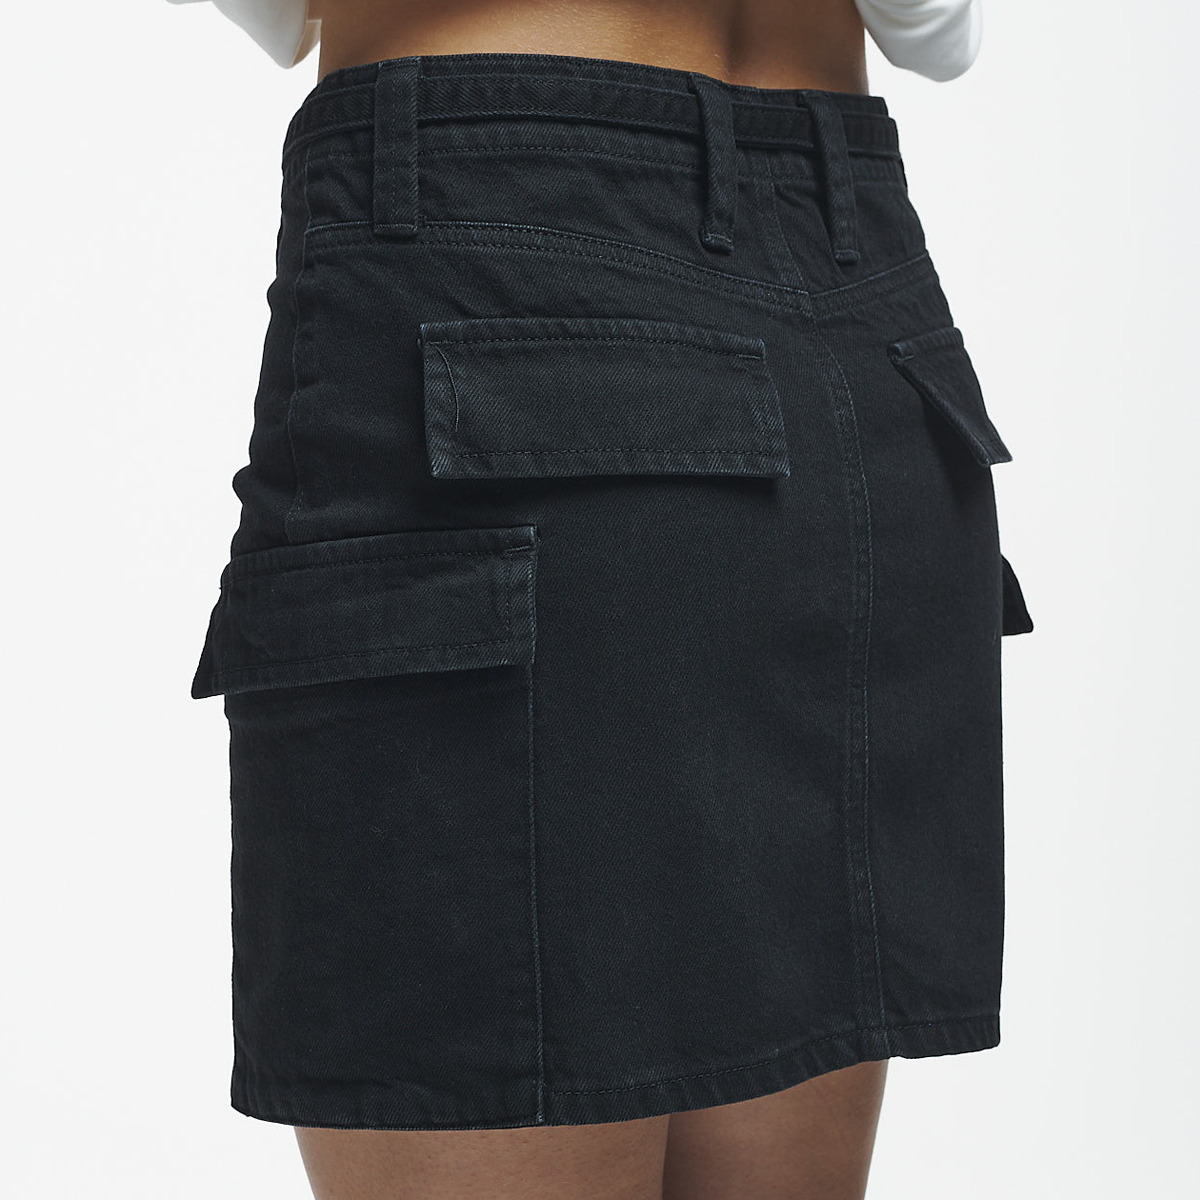 2Y Studios Nisha Pocket Skirt Rokken Dames Black maat: 24 beschikbare maaten:24 25 26 27 28 29 30 31